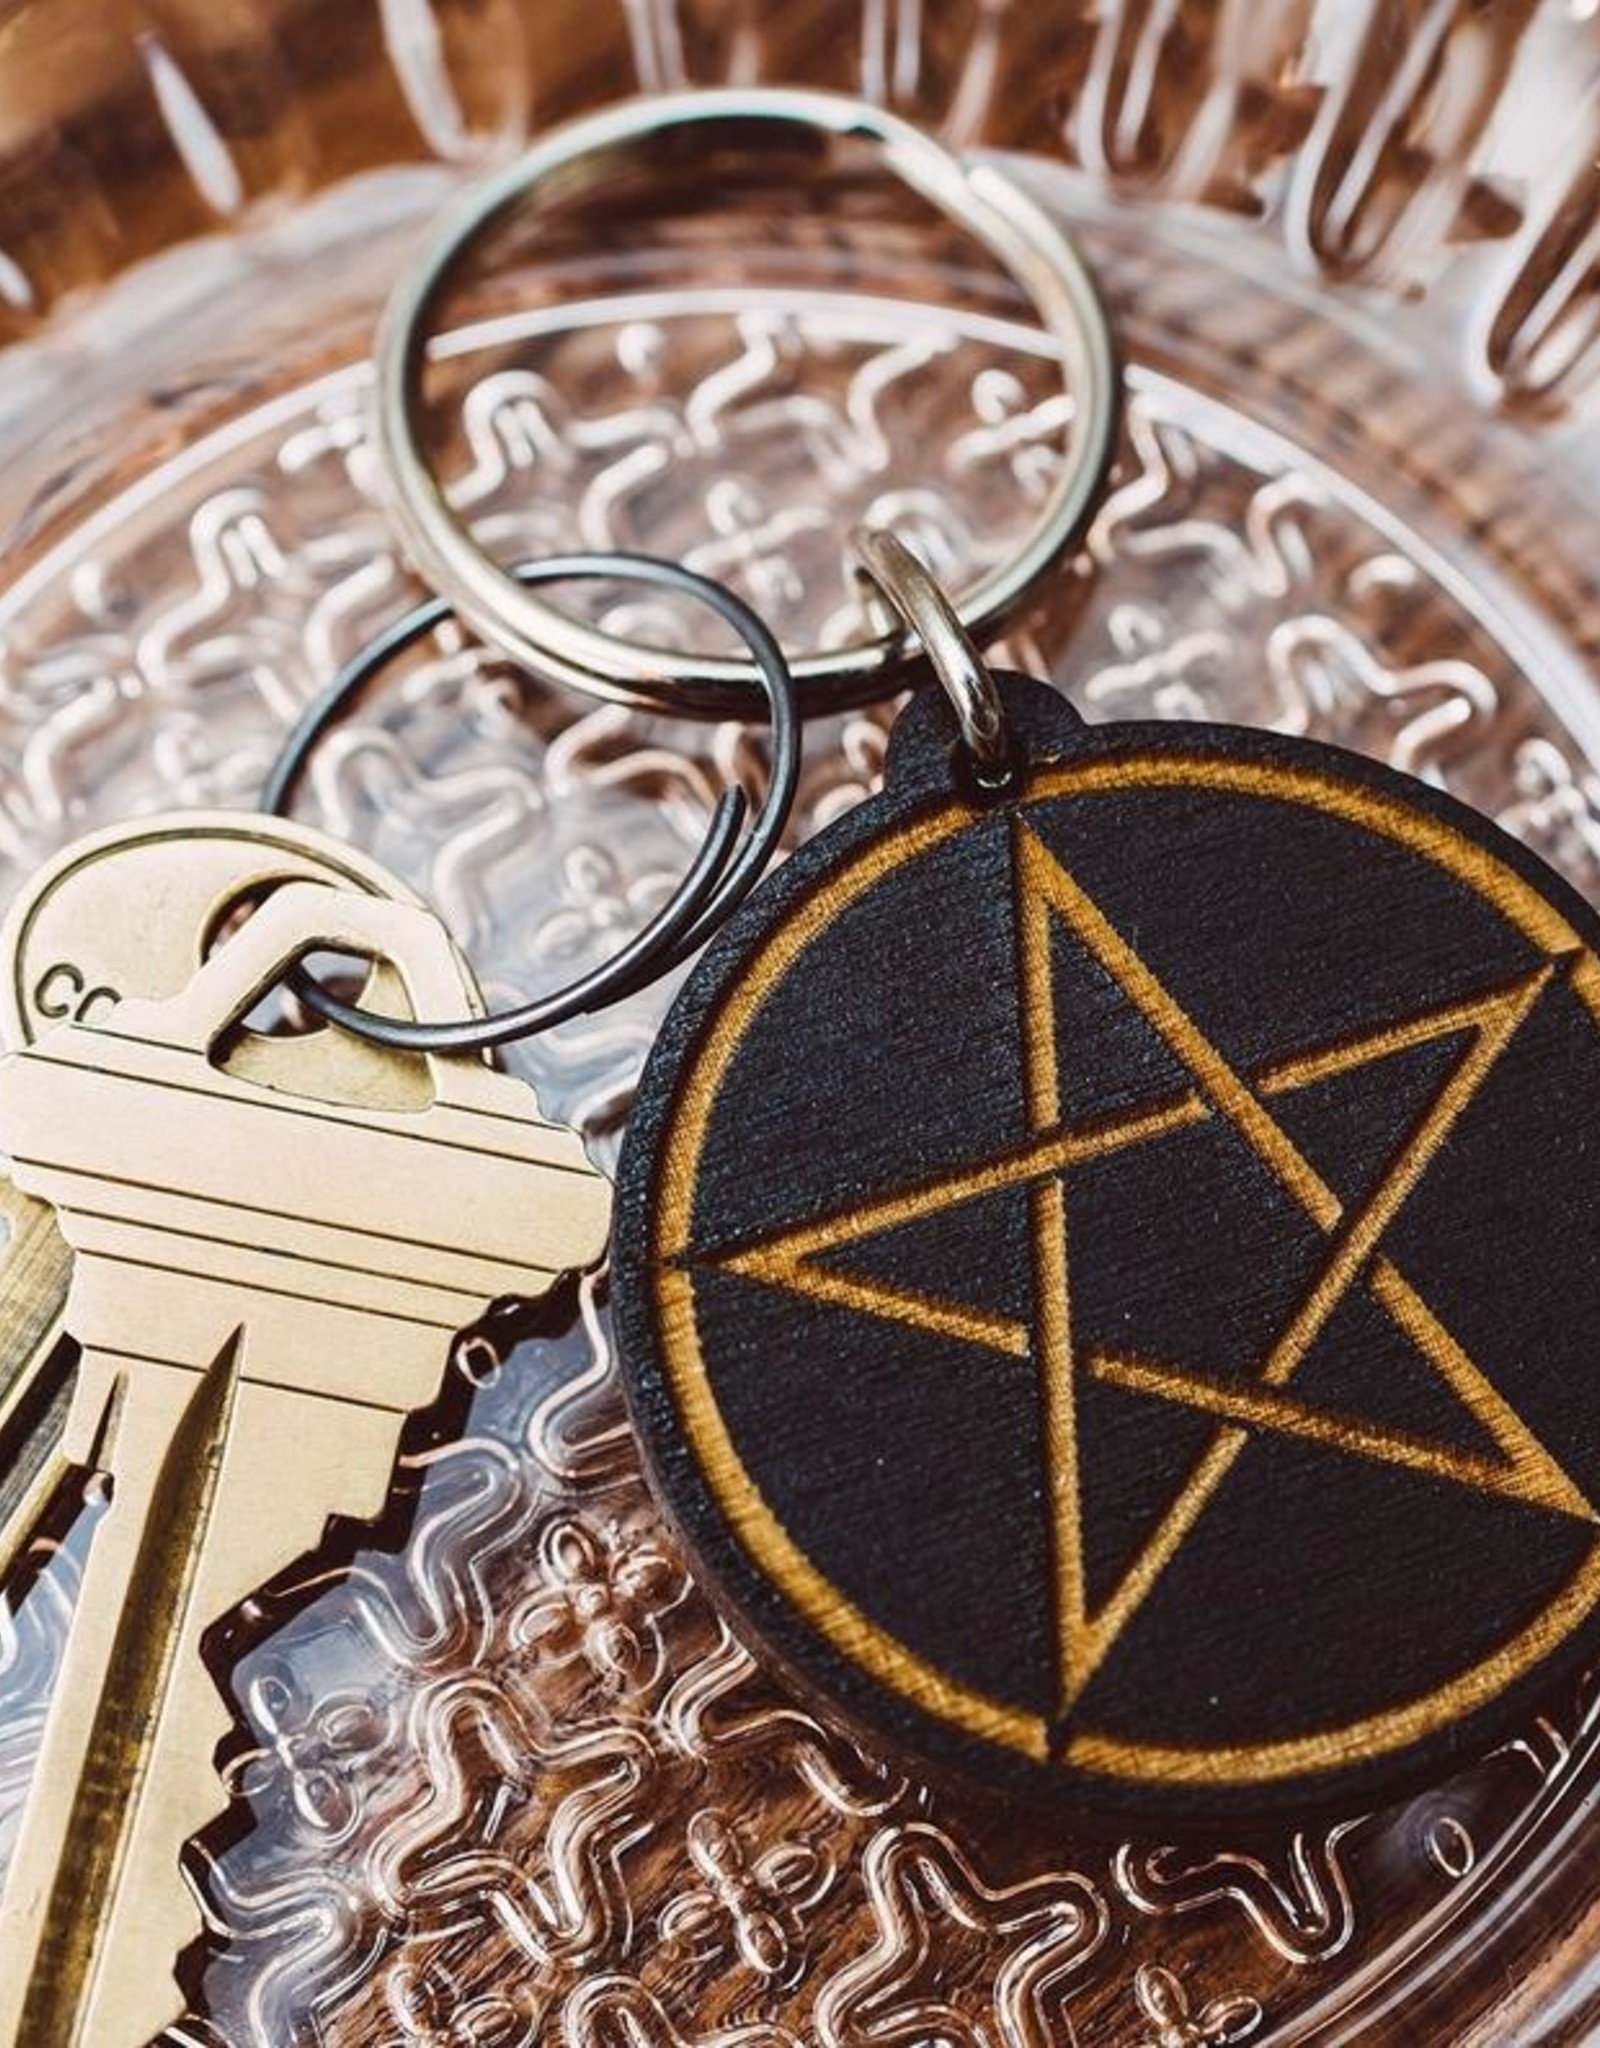 Most Amazing Pentagram Wooden Keychain